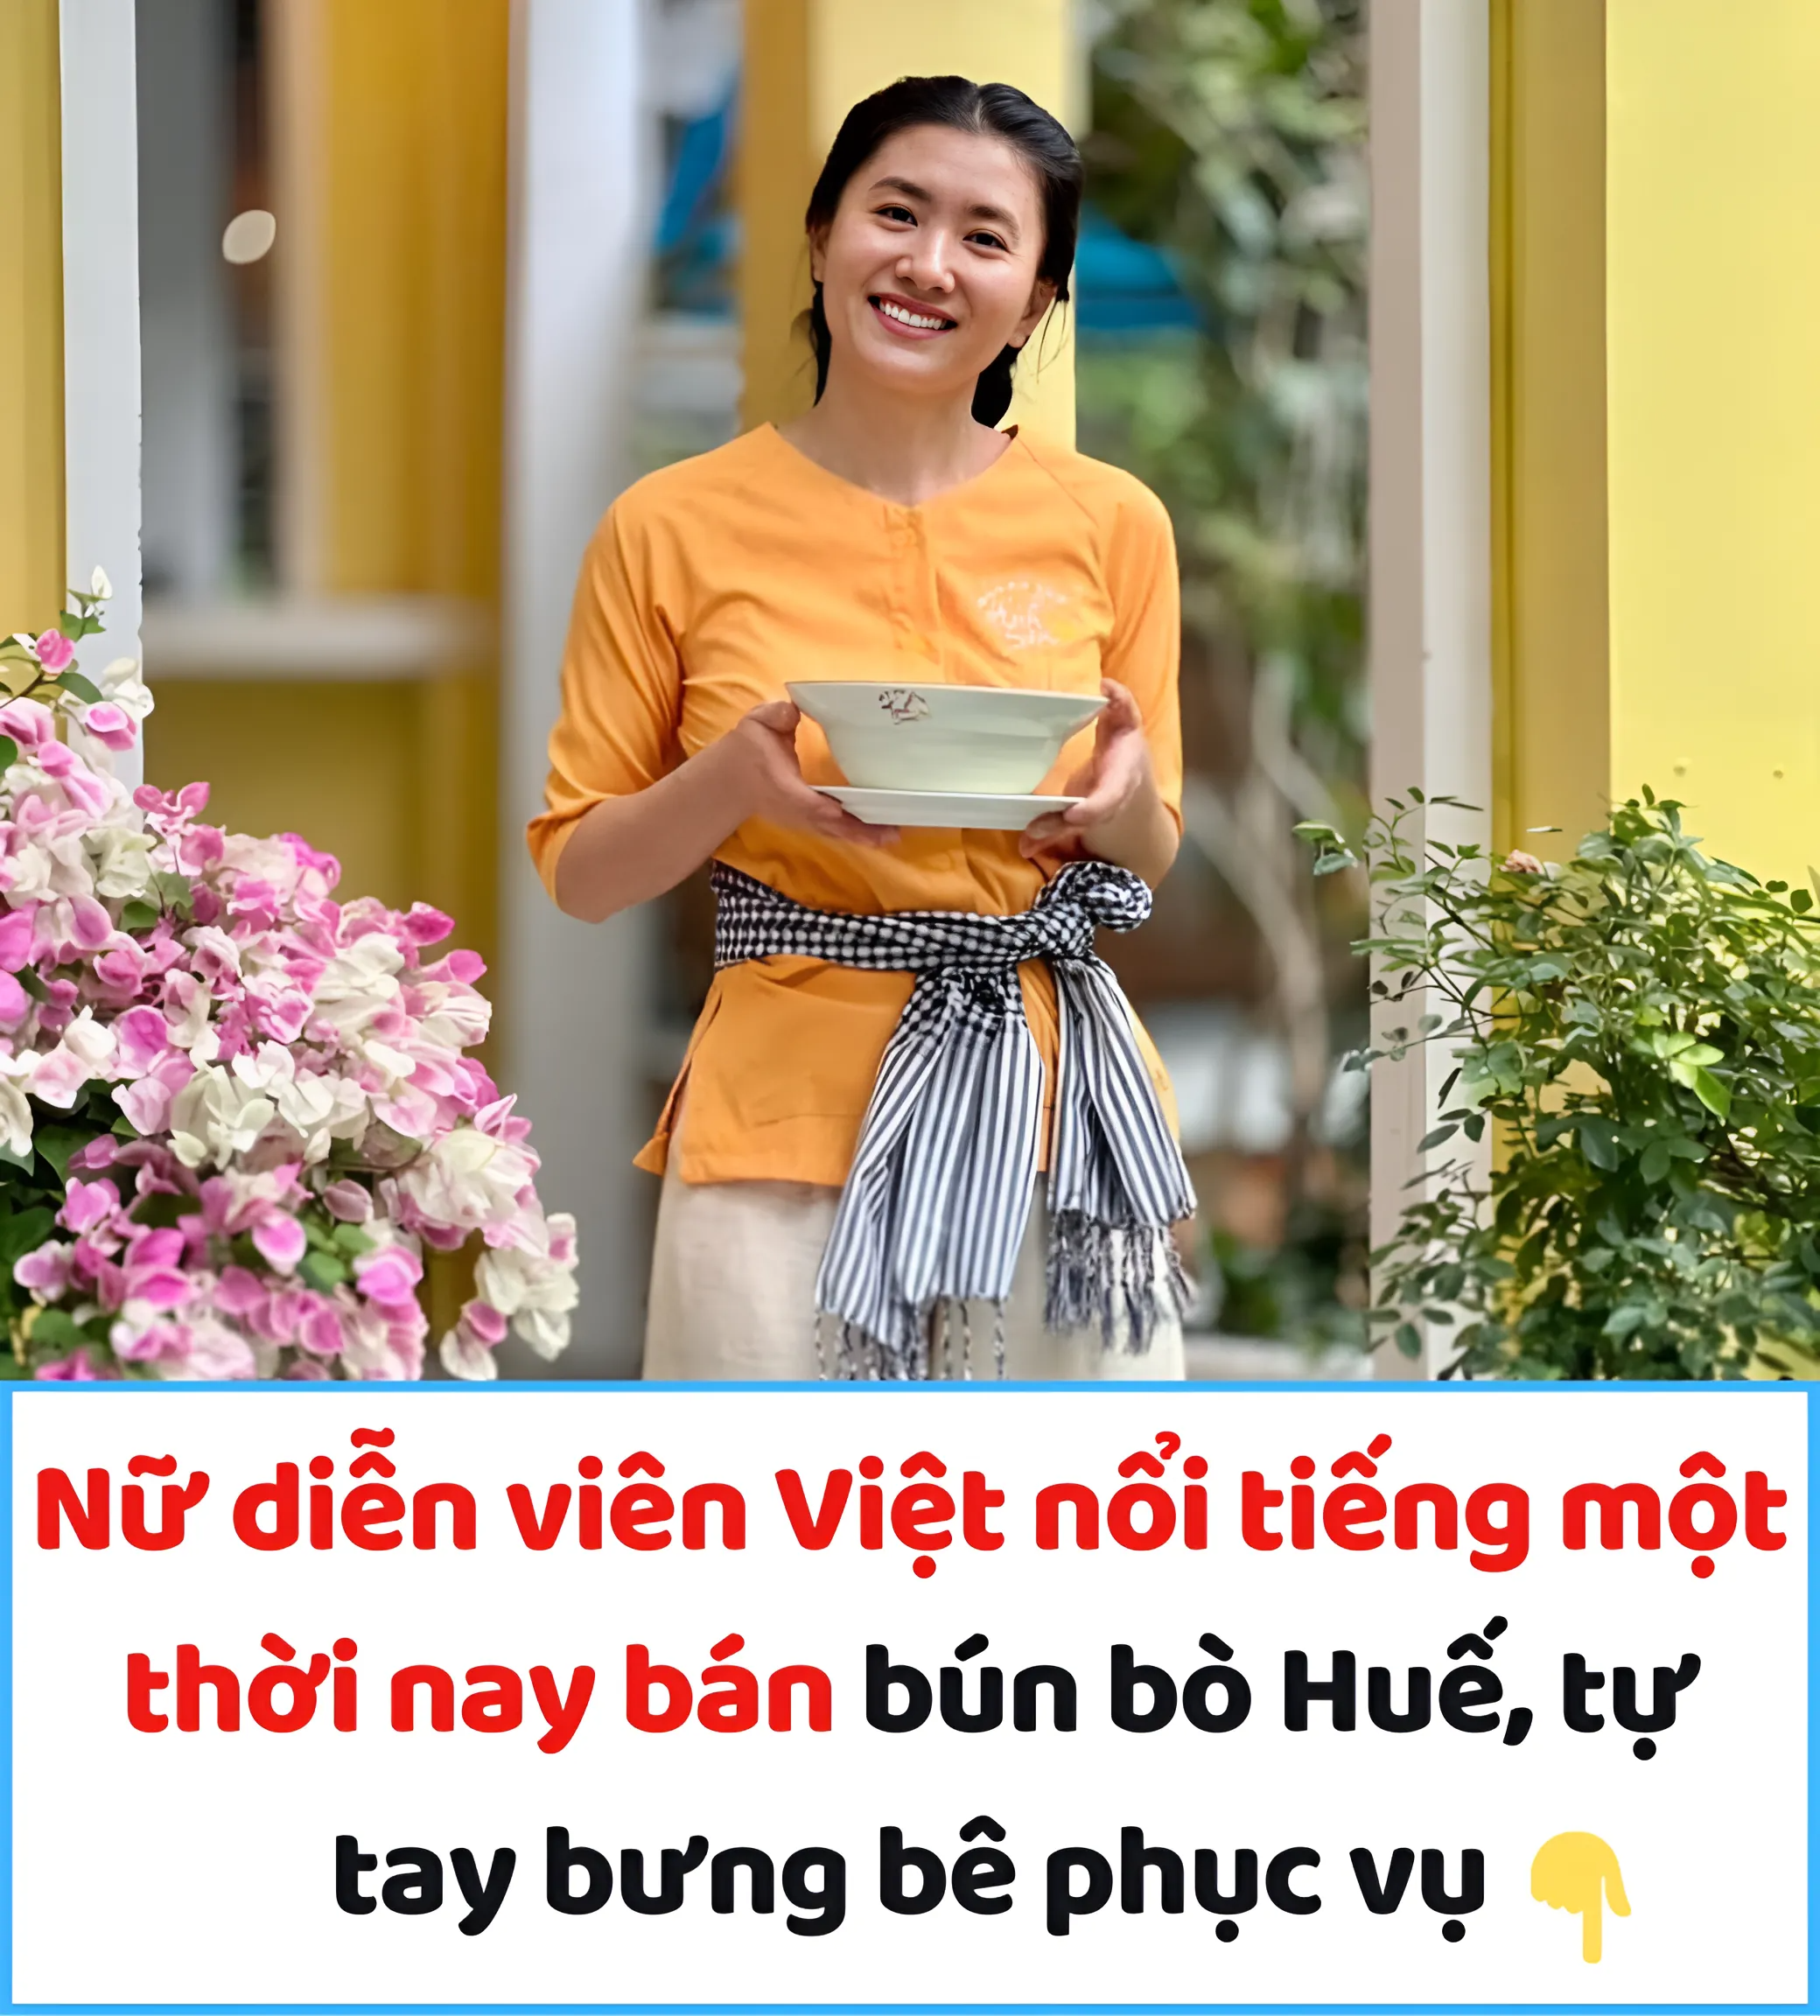 Nữ diễn viên Việt nổi tiếng một thời nay bán bún bò Huế, tự tay bưng bê phục vụ